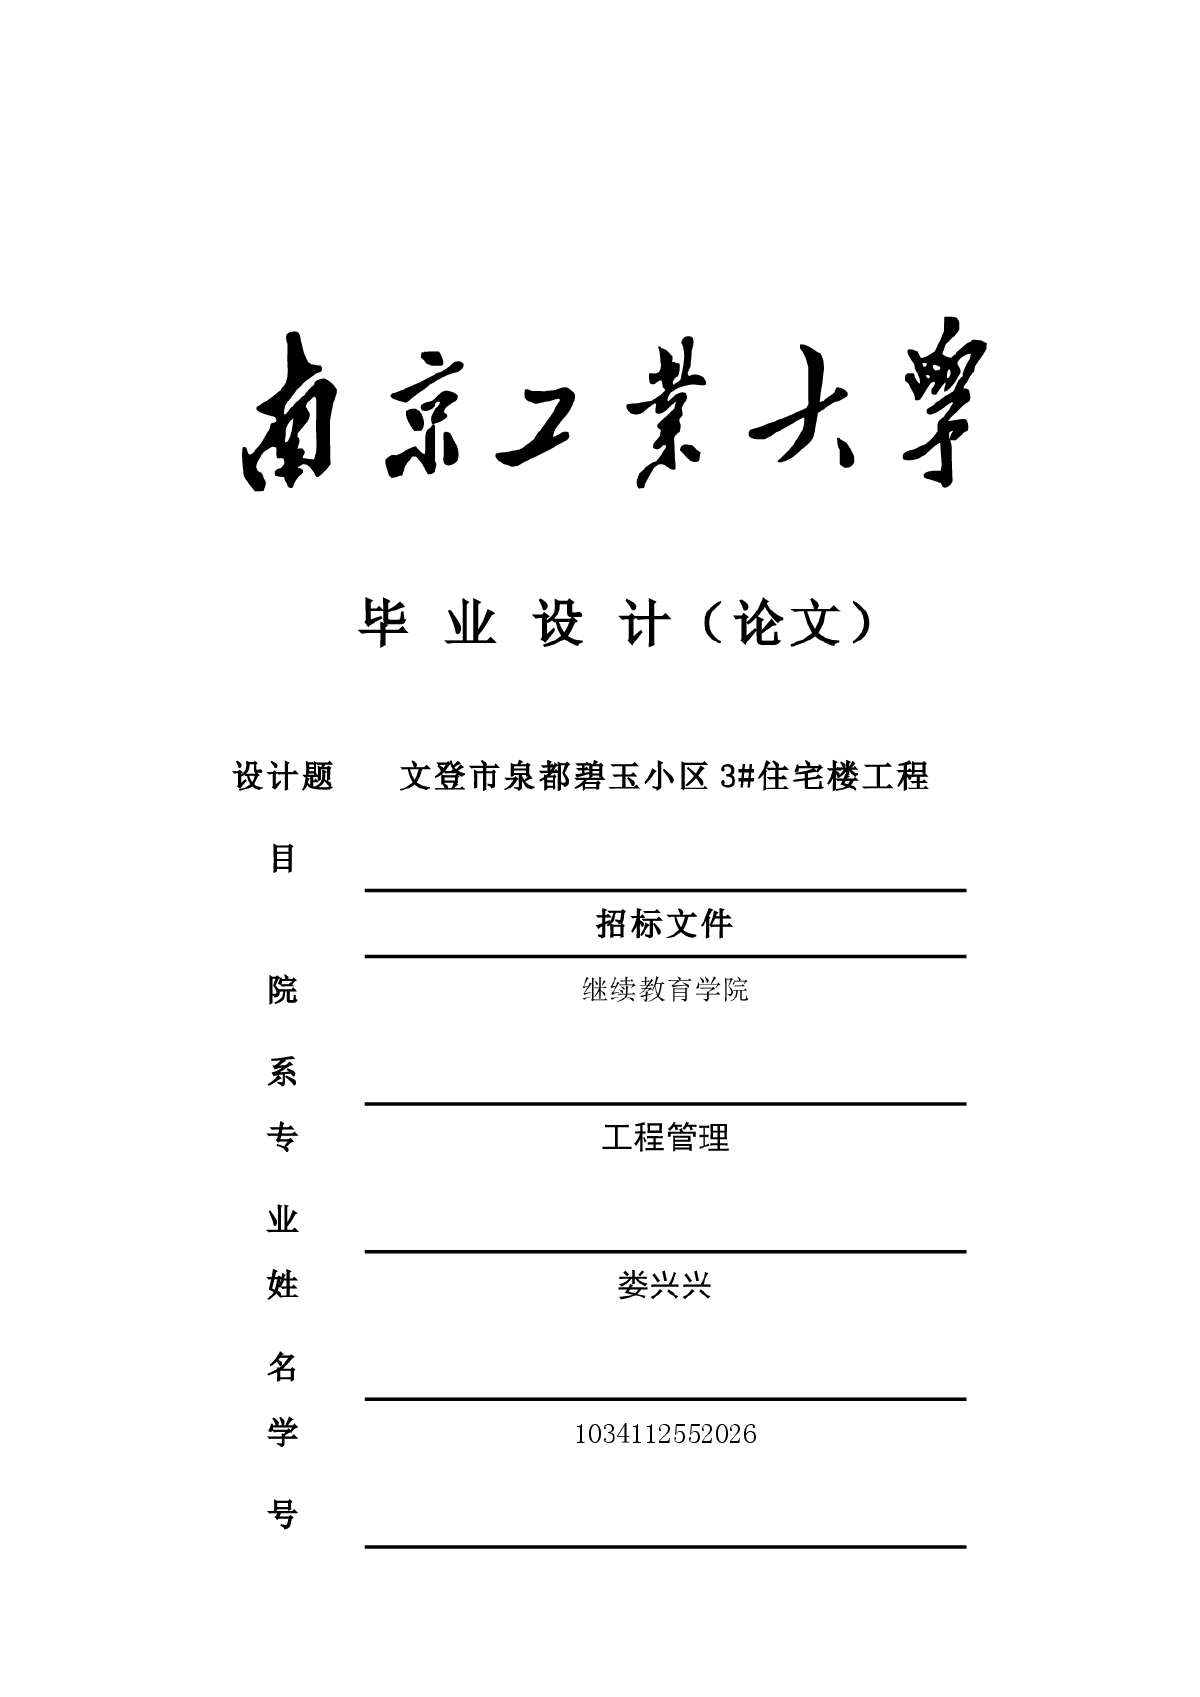 南京工业大学专接本毕业设计（论文）-娄兴兴-图一